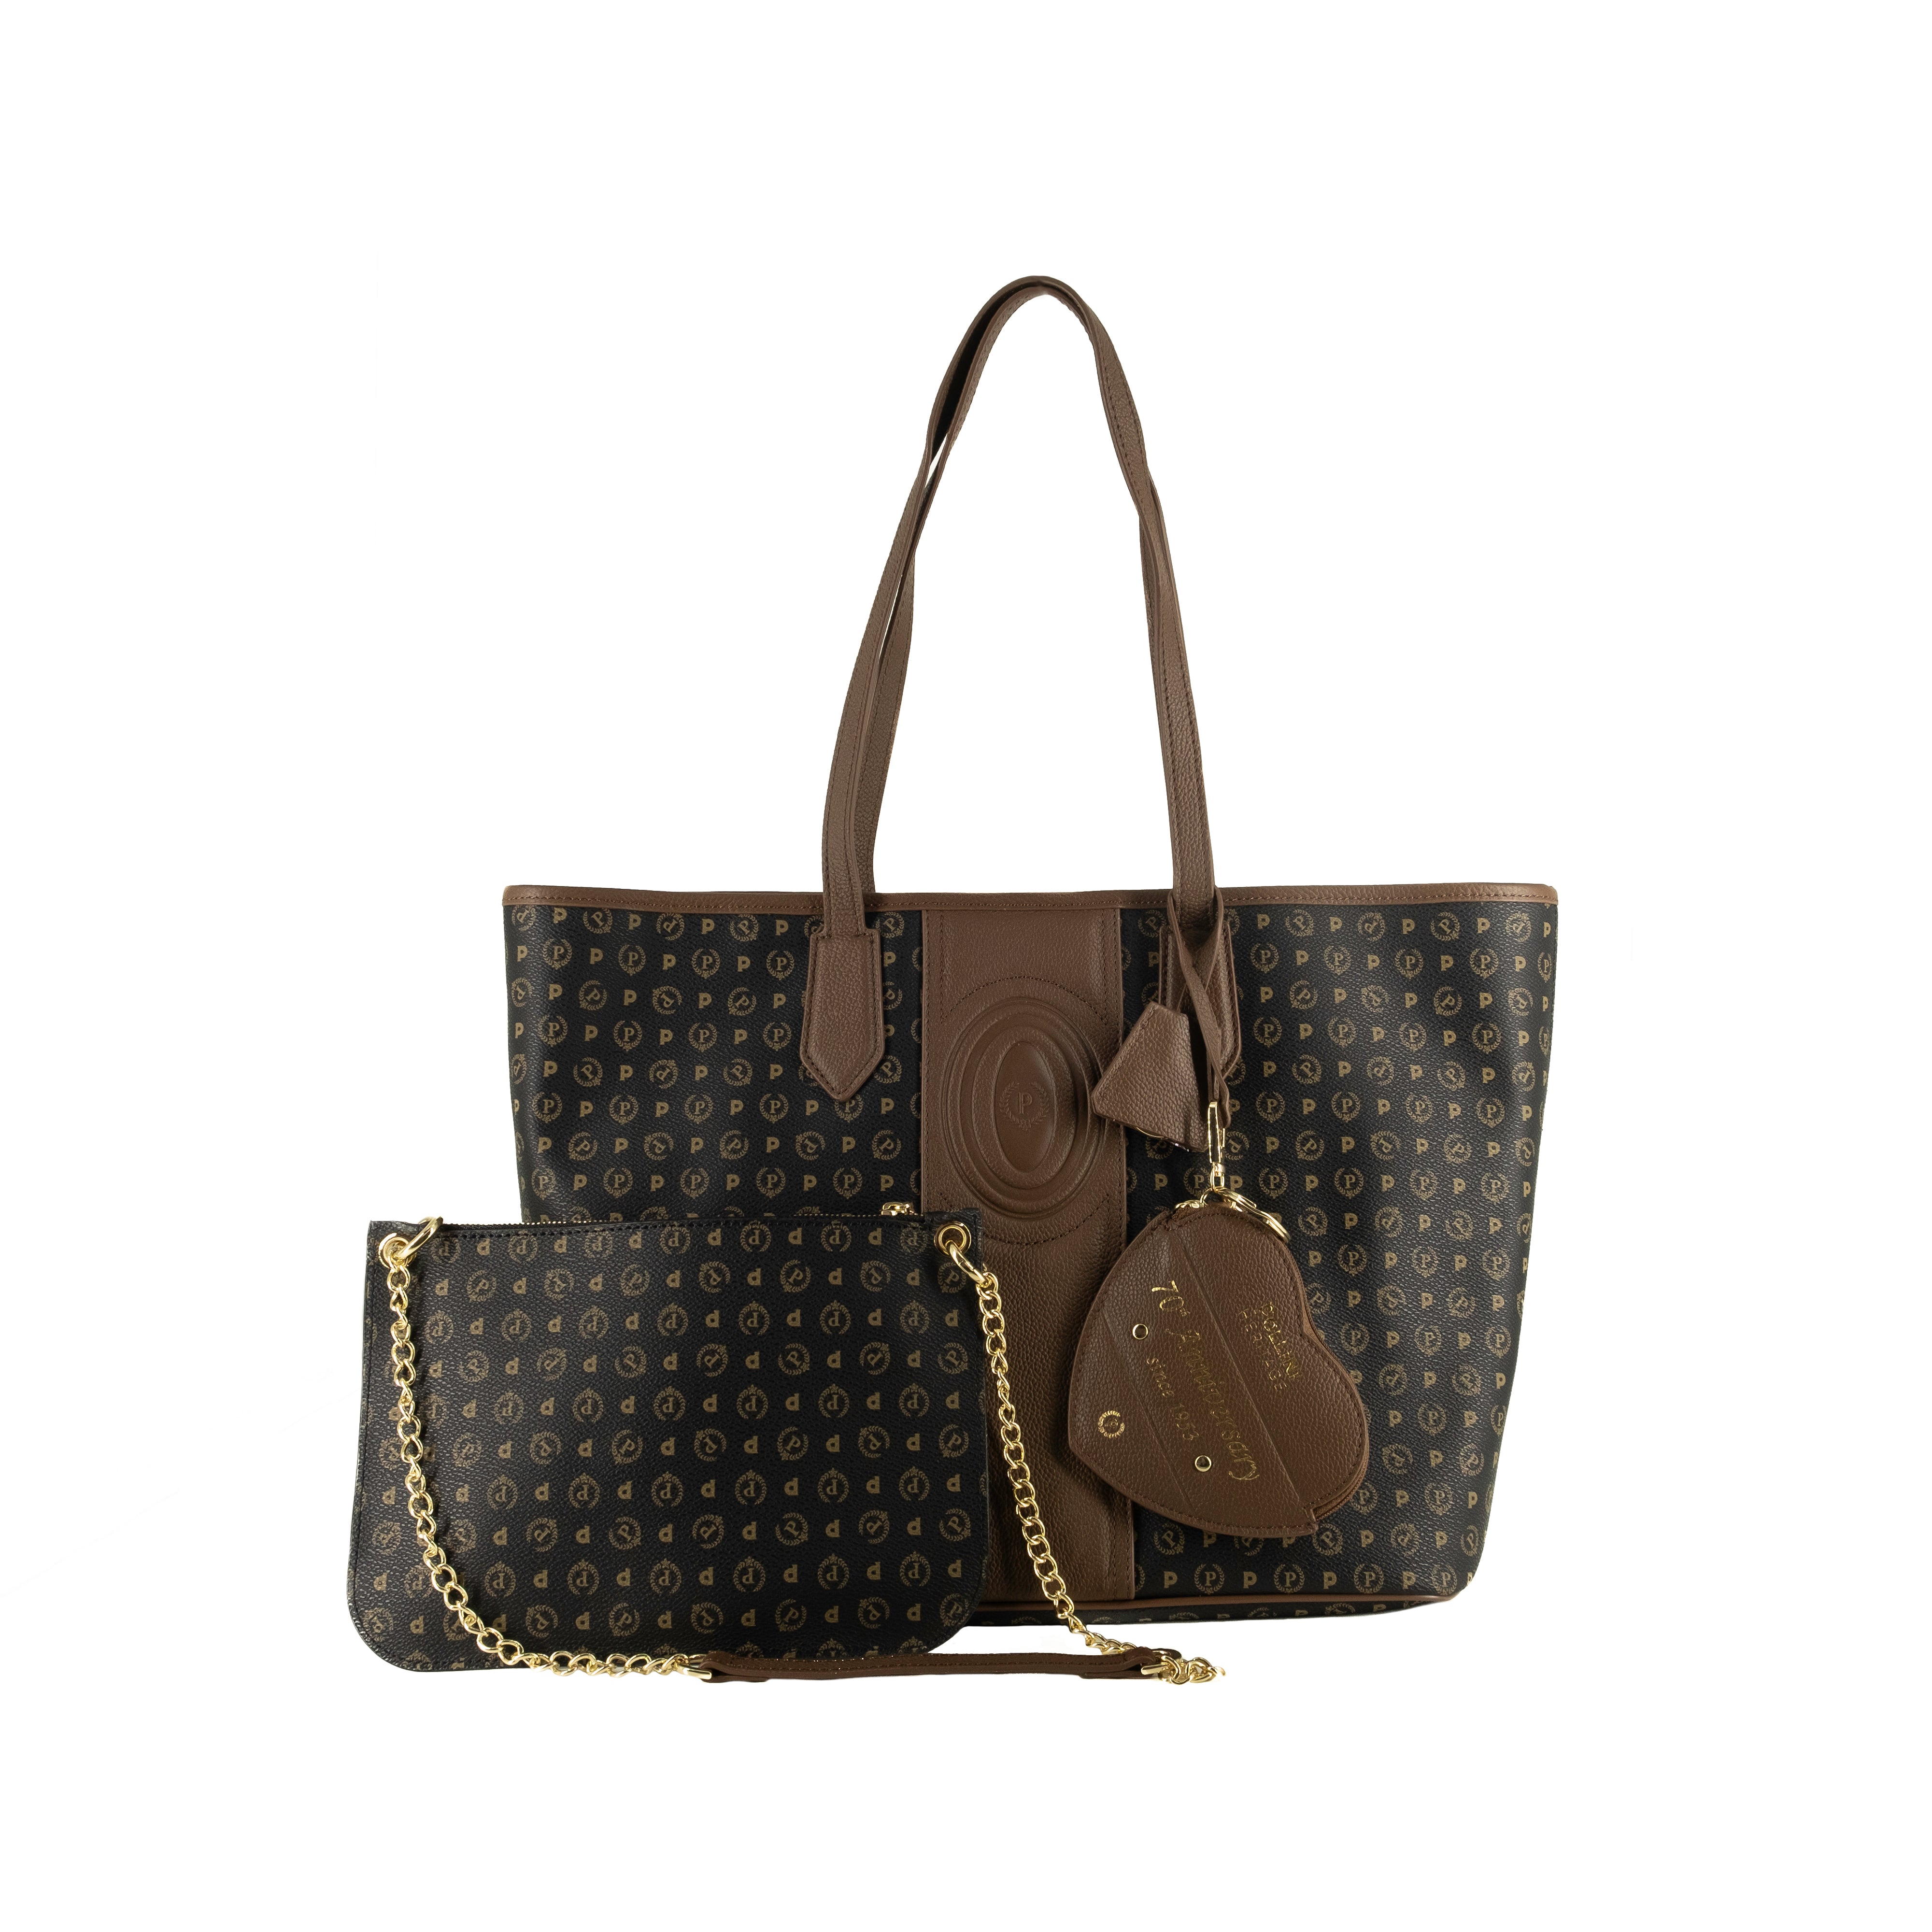 Pollini Black and Brown Heritage Handbag